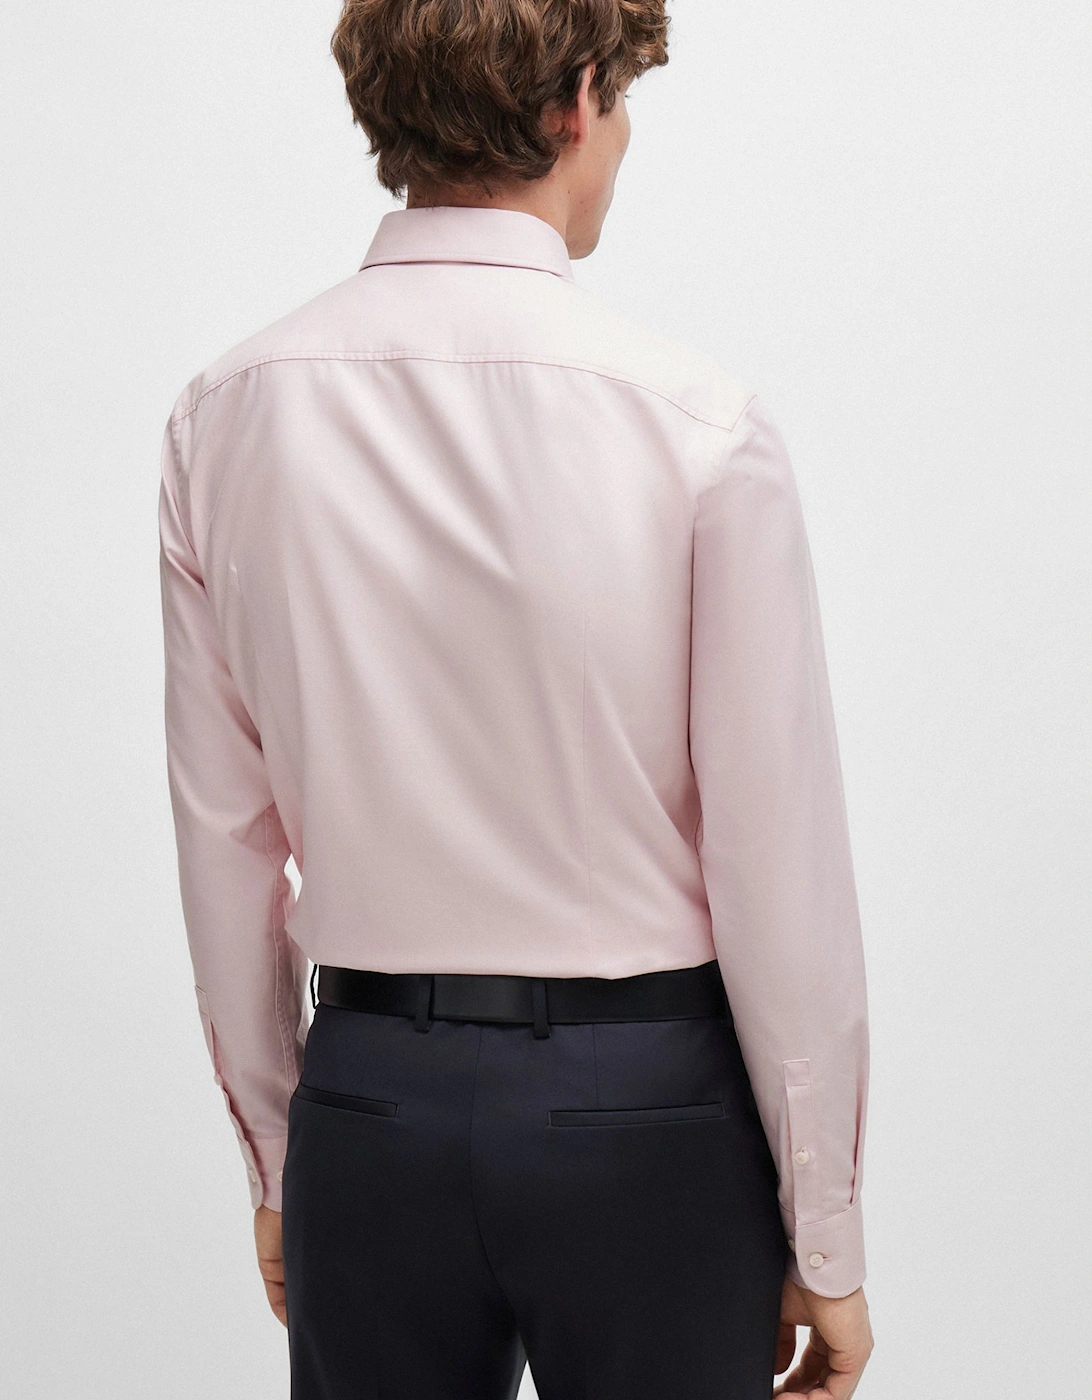 Boss H-hank-kent-c6-242 Long Sleeved Shirt Light Pastel Pink